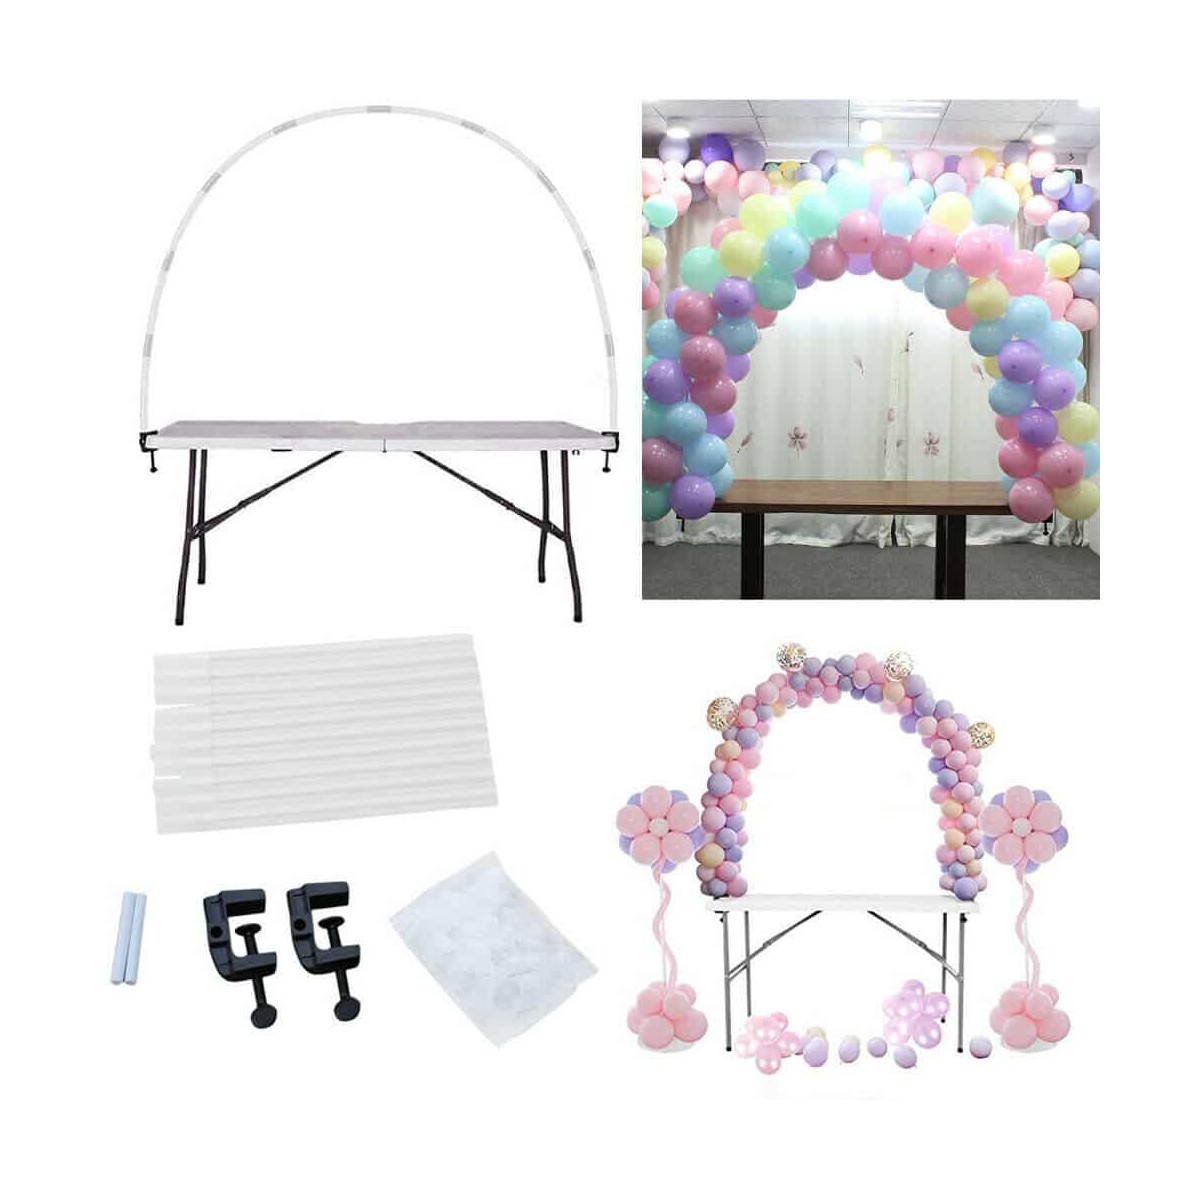 Arco di palloncini da tavolo - 120 cm - Sparklers Club